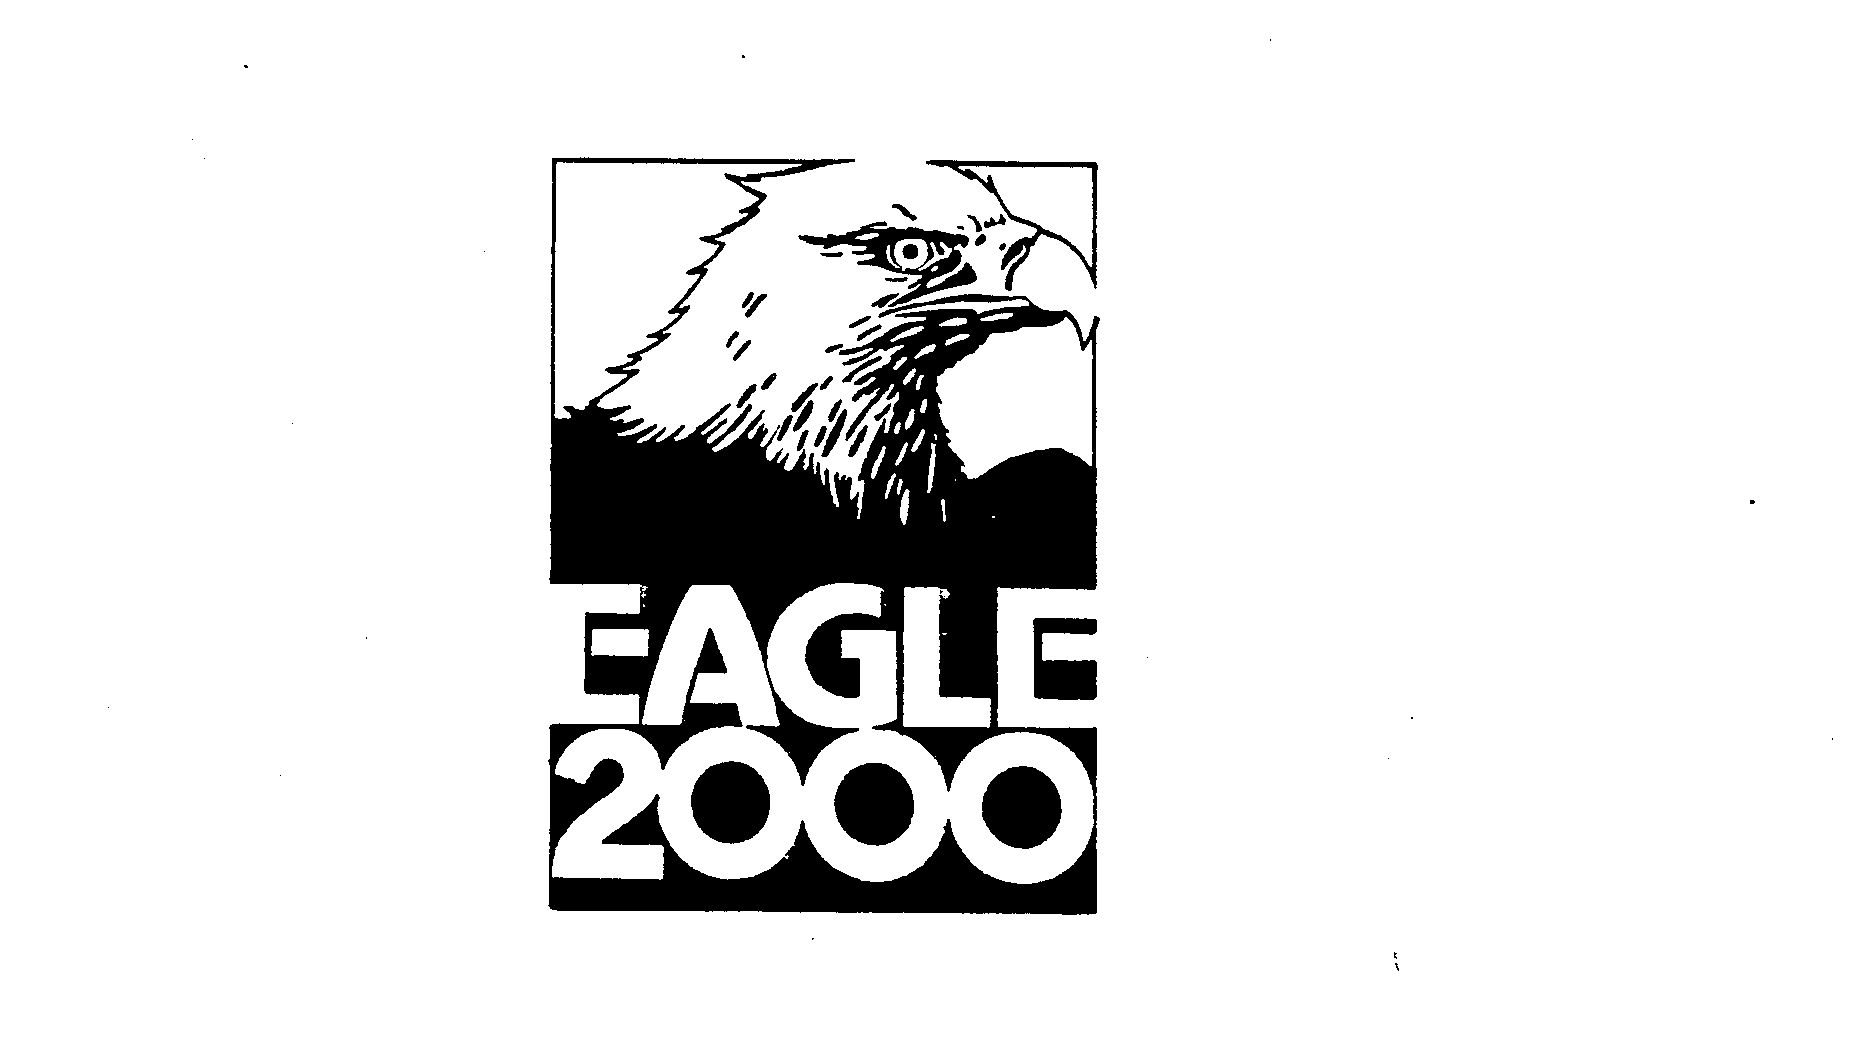 EAGLE 2000